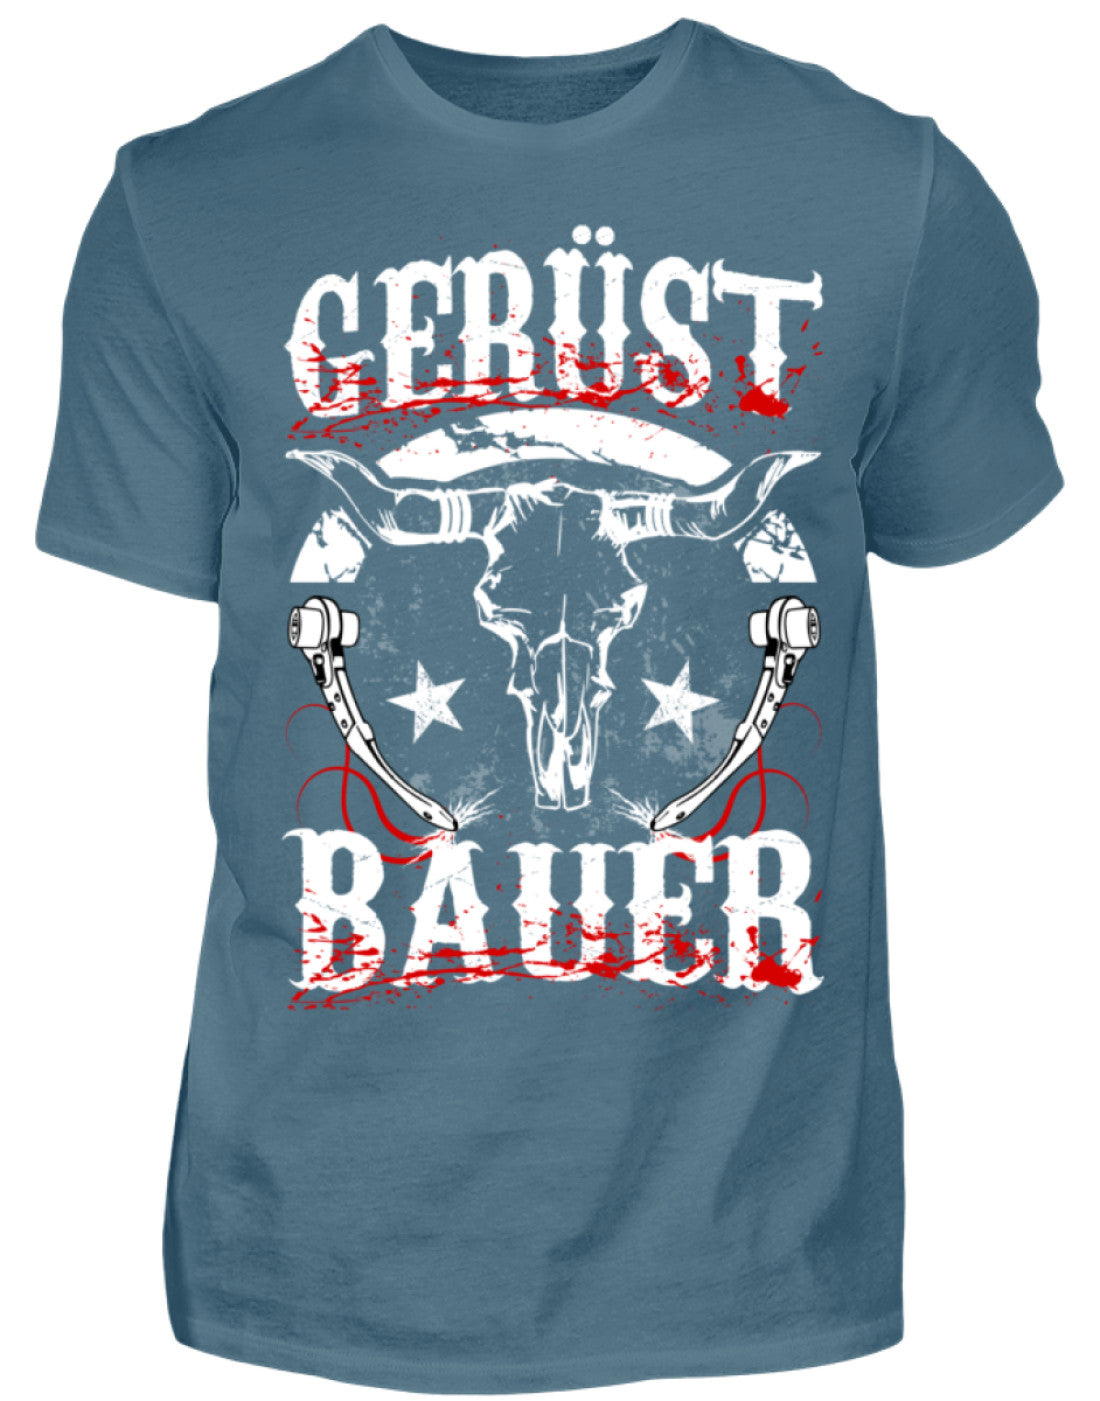 Gerüstbauer T-Shirt €21.95 Gerüstbauer - Shop >>